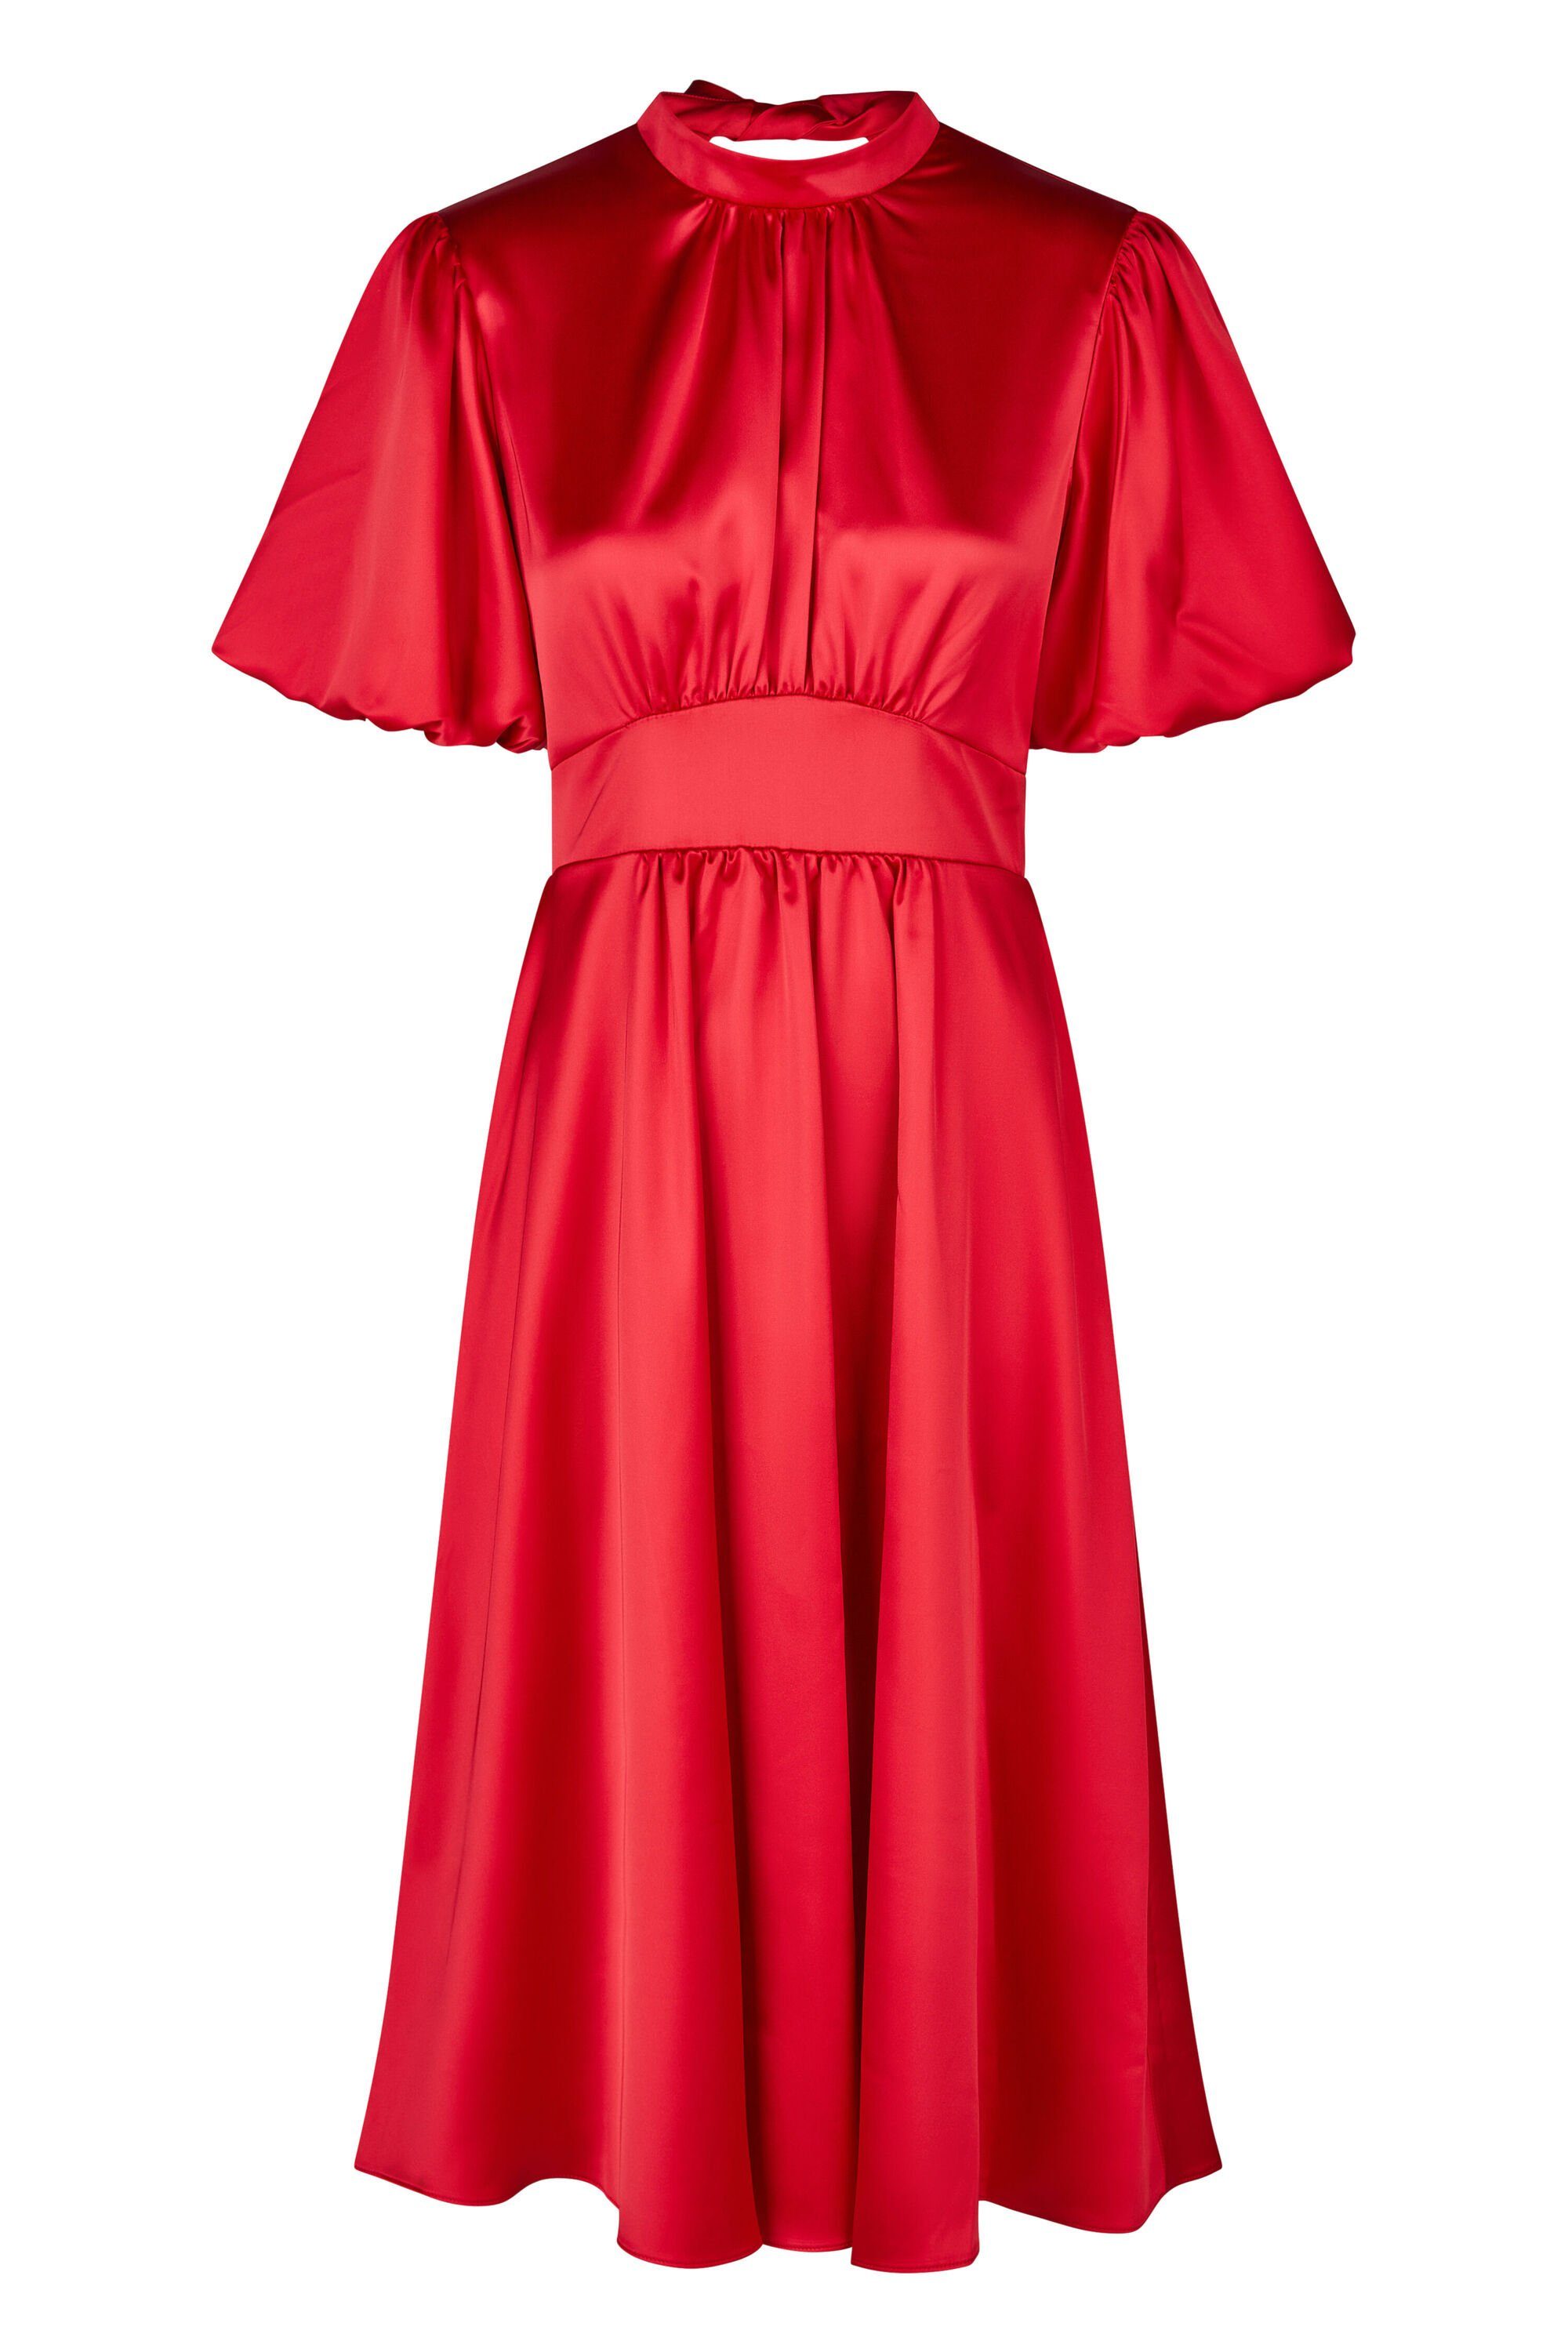 Satin Abendkleid aus POPPY Abendkleid Bindeschleife Kleo mit RED